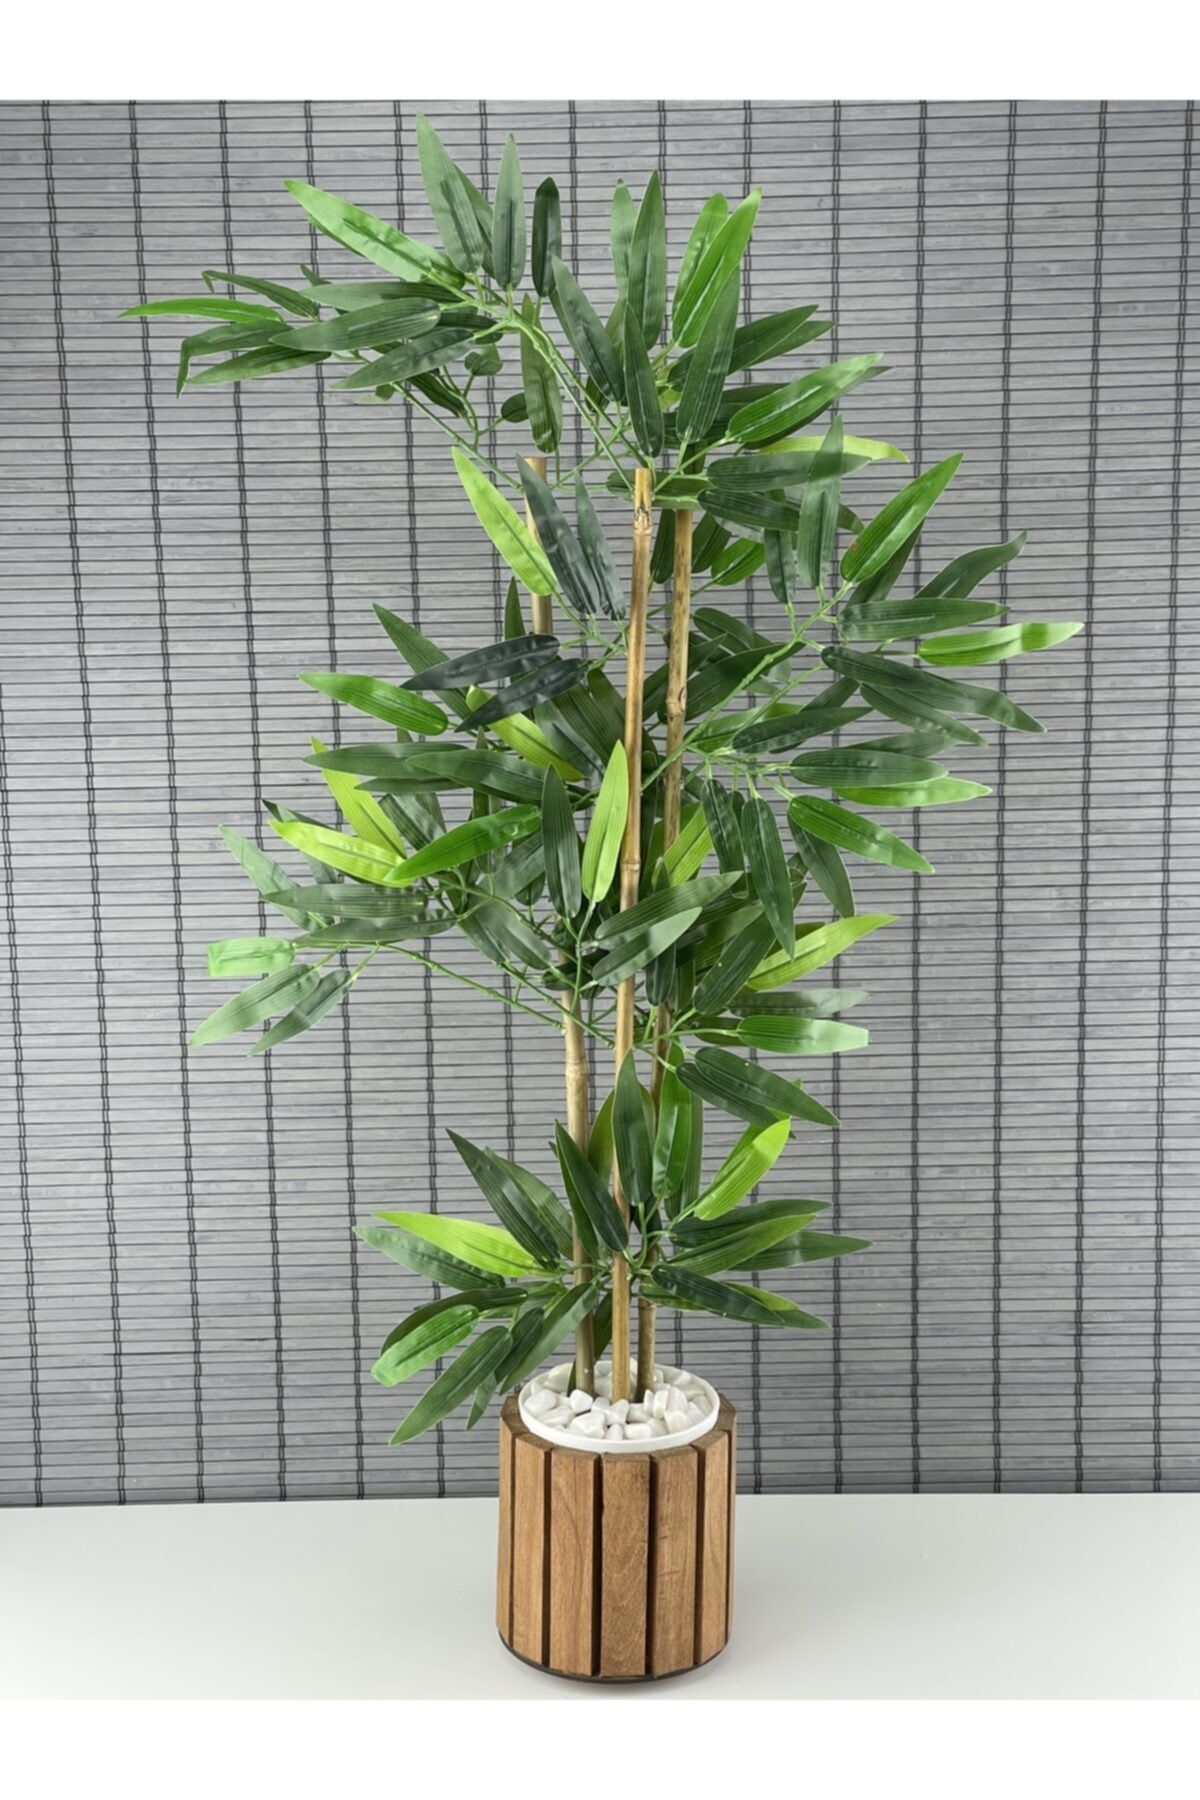 Bahçem Yapay Yoğun Yapraklı Dekoratif Bambu Ağacı Ahşap Saksılı 3 Gövde 80cm